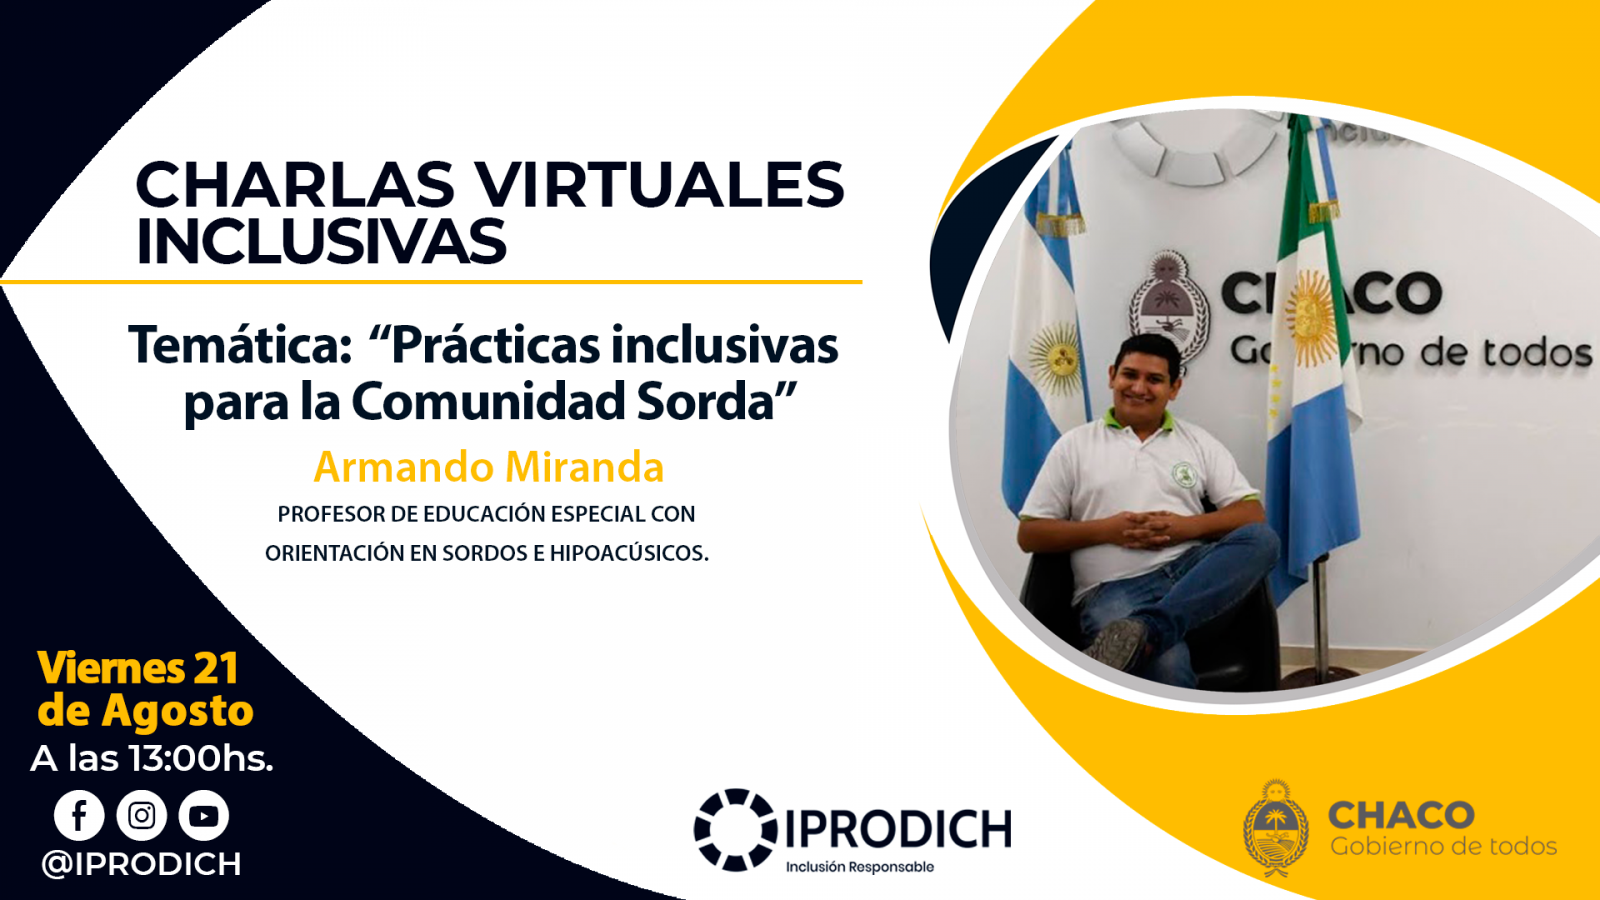 IPRODICH lleva adelante un ciclo gratuito de Charlas Virtuales Inclusivas